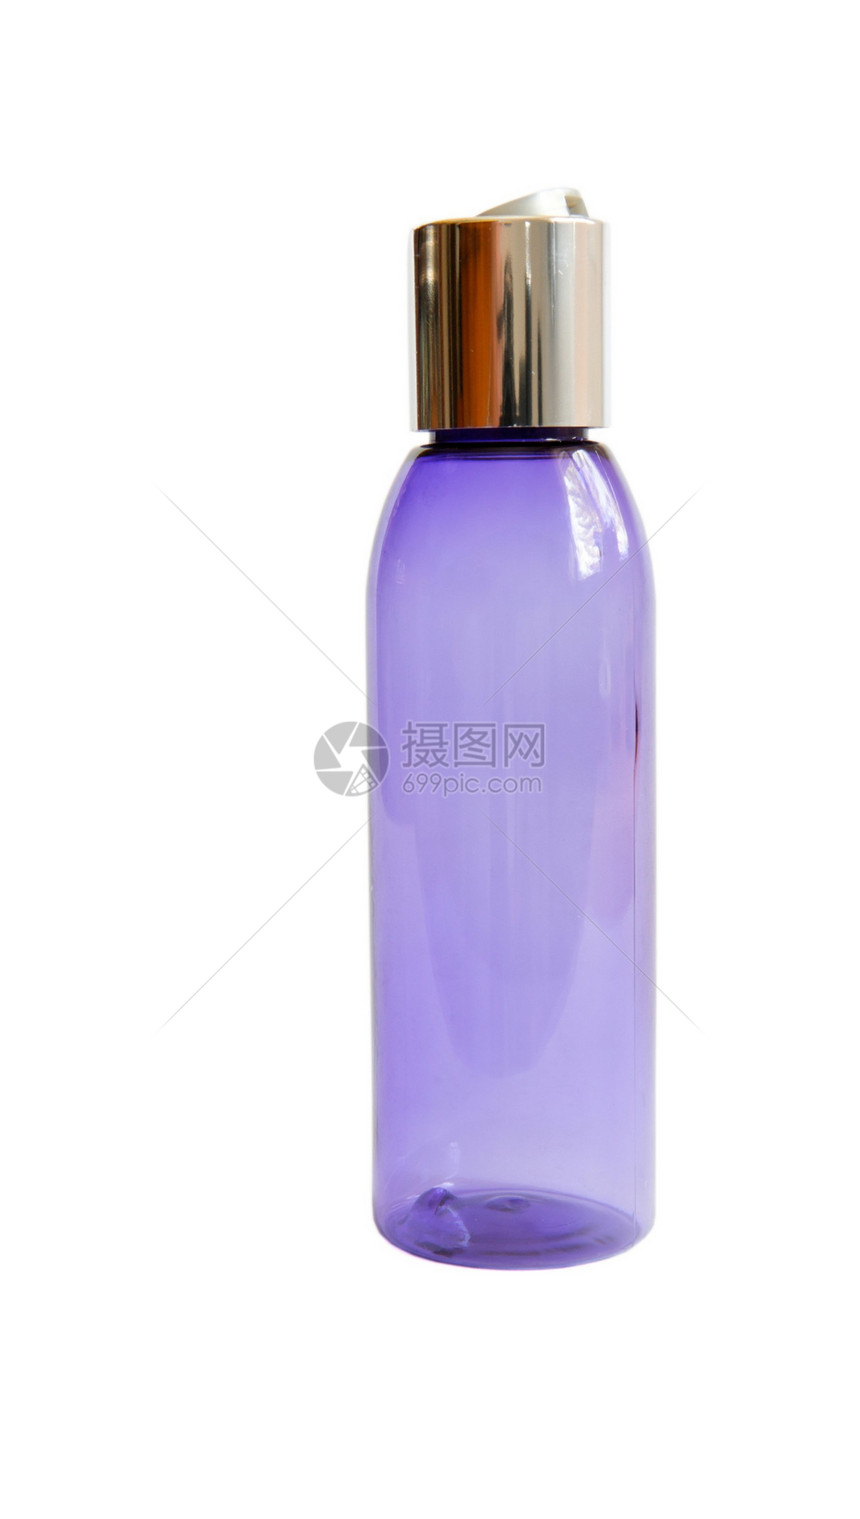 分离的紫色透明除臭剂喷雾瓶图片